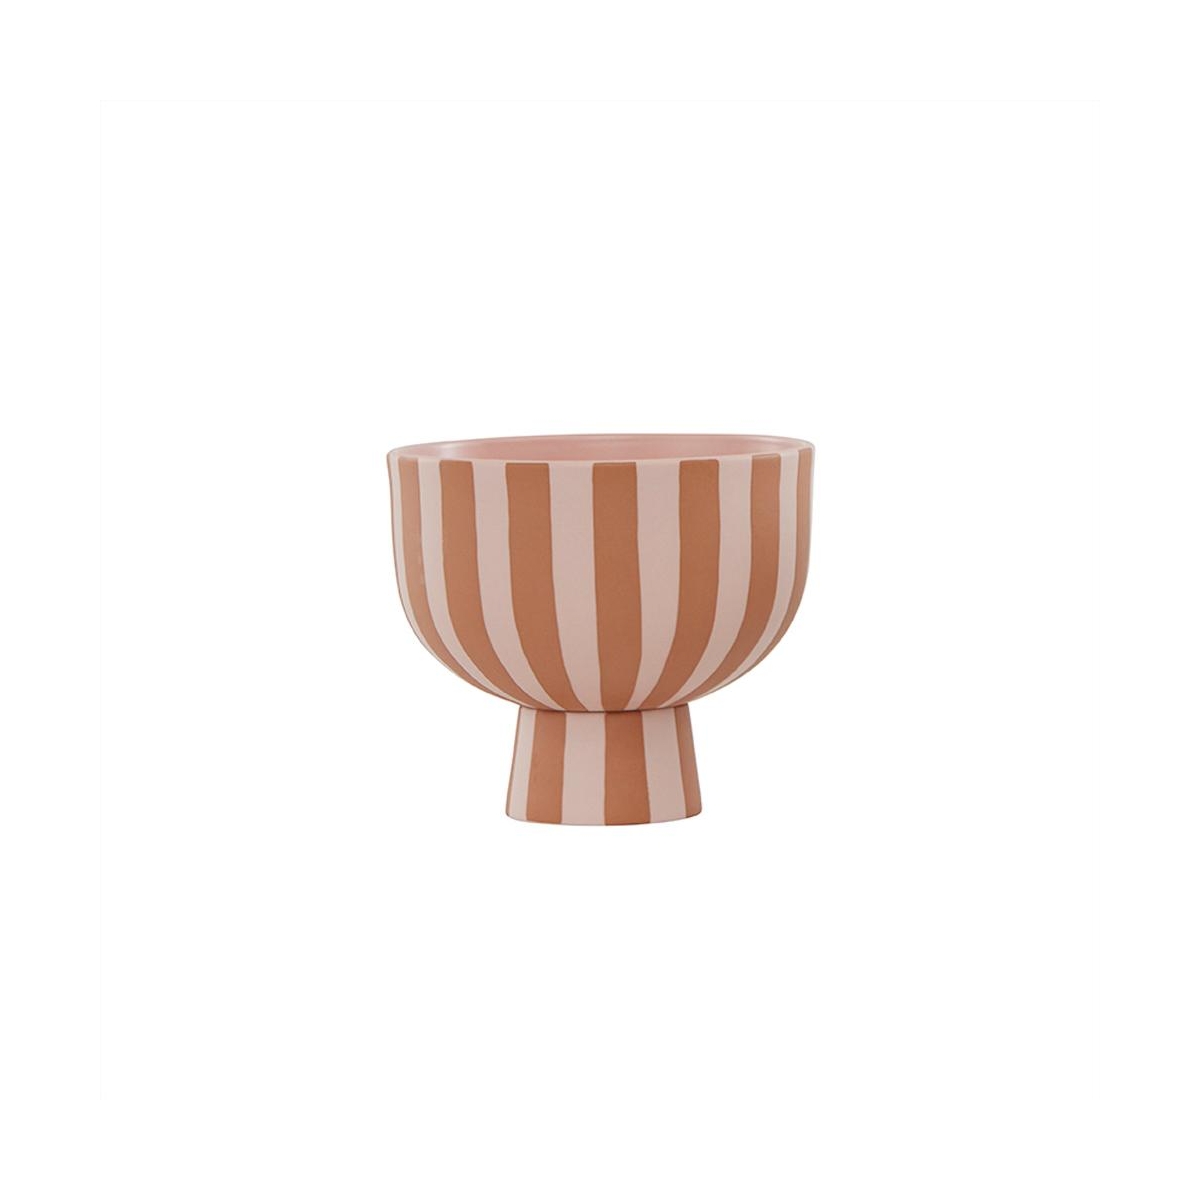 OYOY Toppu bowl pink L10233